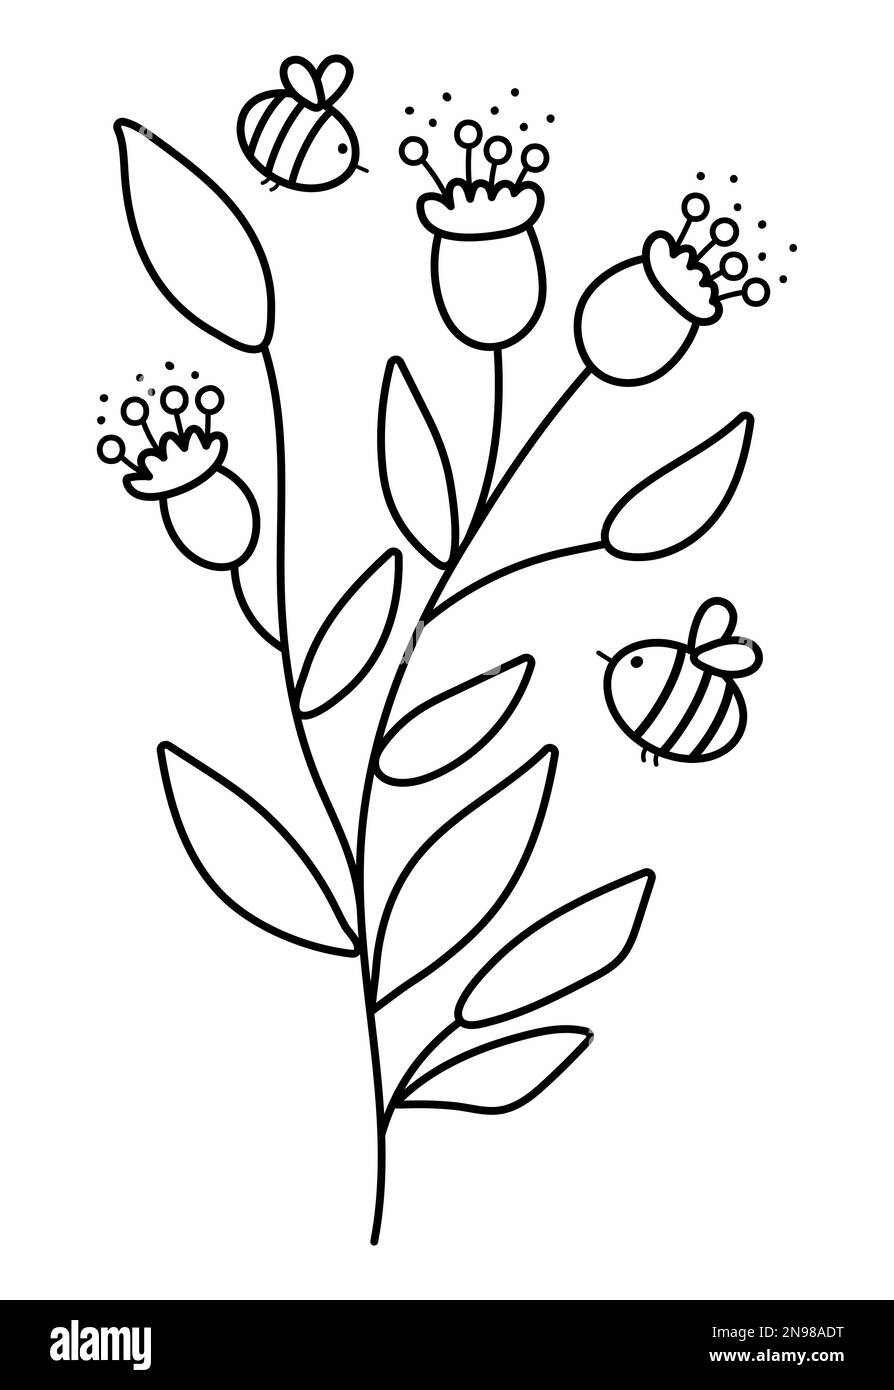 Fleurs noires et blanches vectorielles avec abeilles. Illustration de contour drôle ou page de coloriage avec les plantes pollinisantes de bourdons. Insectes de miel avec verdure Illustration de Vecteur